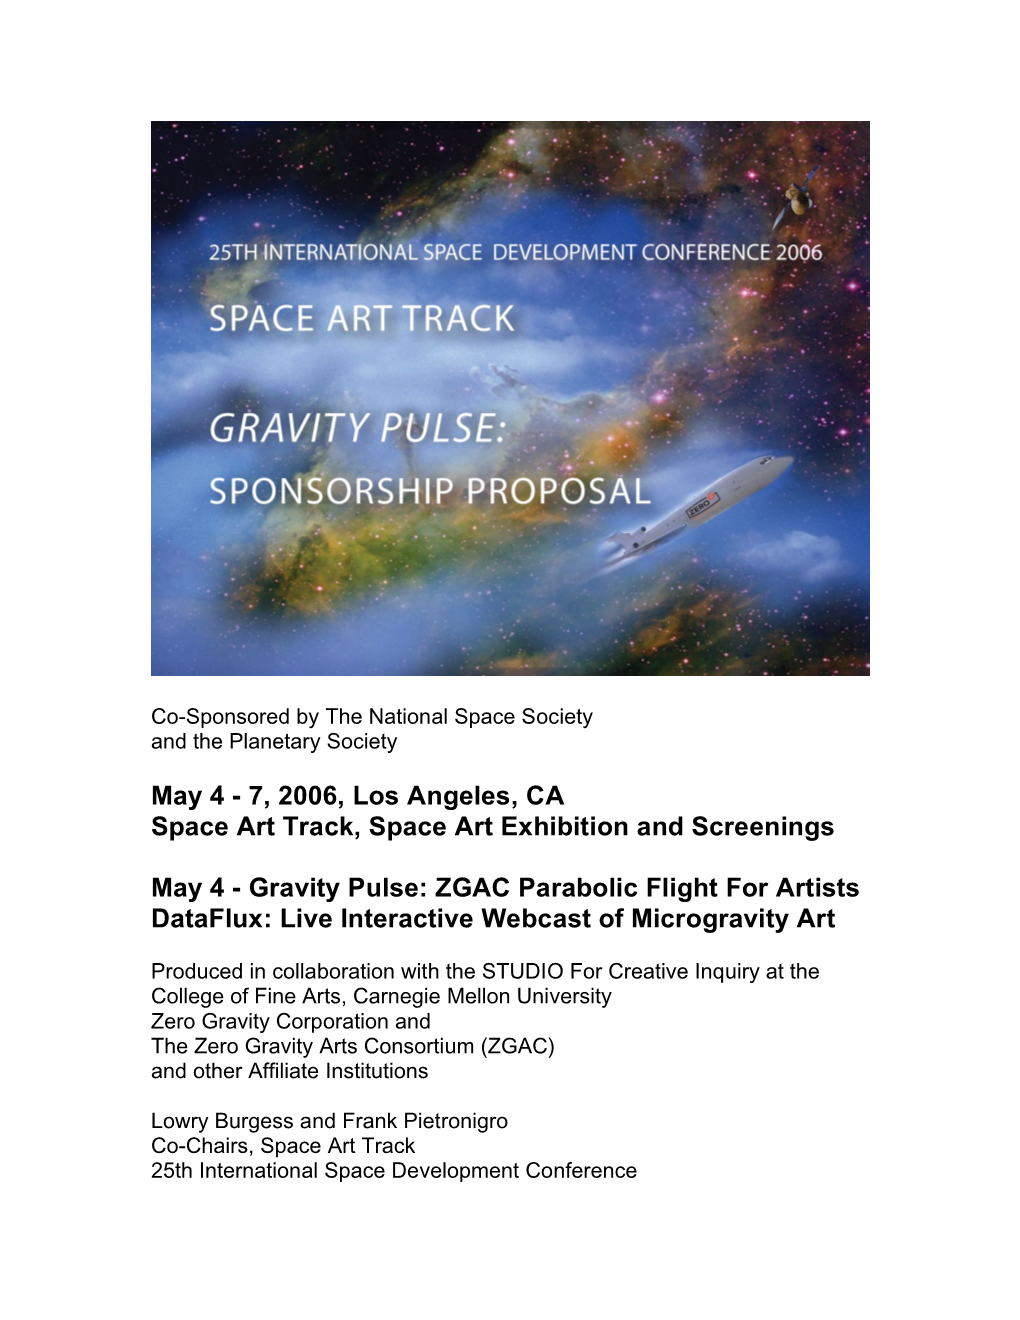 For SPACE ART TRACK SPONSORSHIP